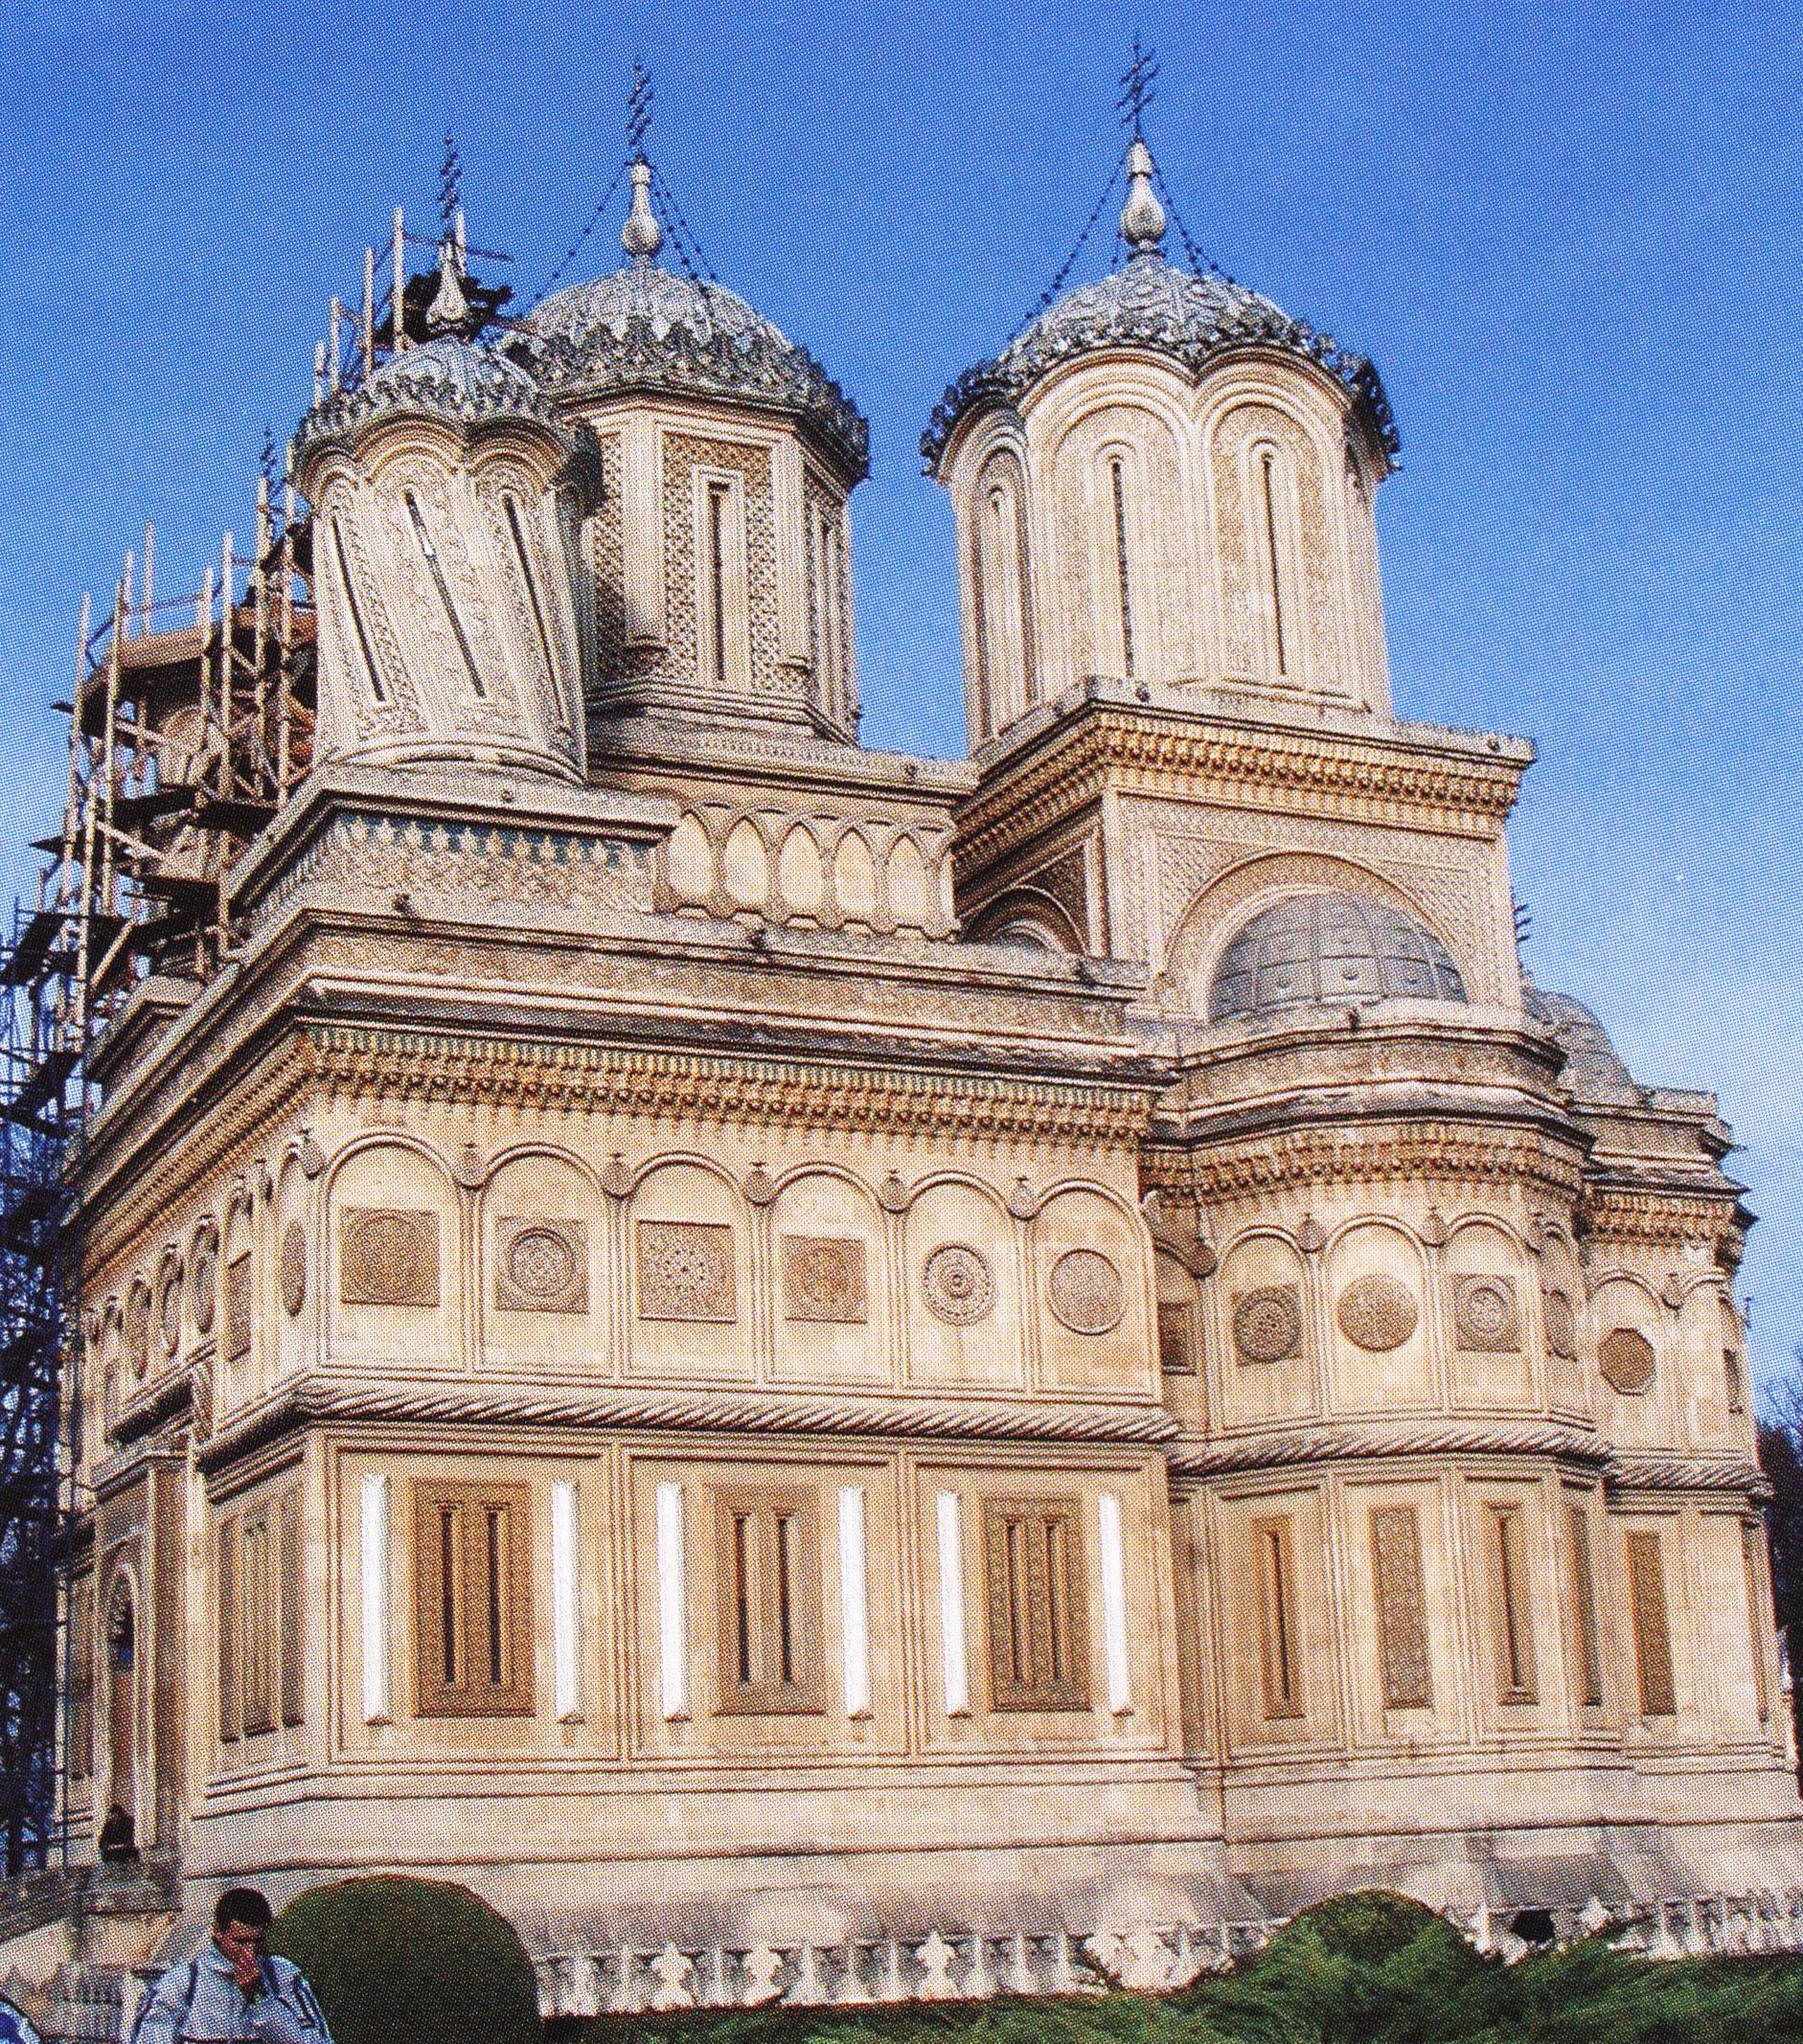 Κούρτεα ντε Άρτζες. Το καθολικό της Μονής τιμάται στην Κοίμηση της Θεοτόκου. Θεωρείται ο καλλιτεχνικότερος ναός της Ρουμανίας και συνάμα αποτελεί και ιστορικό μνημείο.